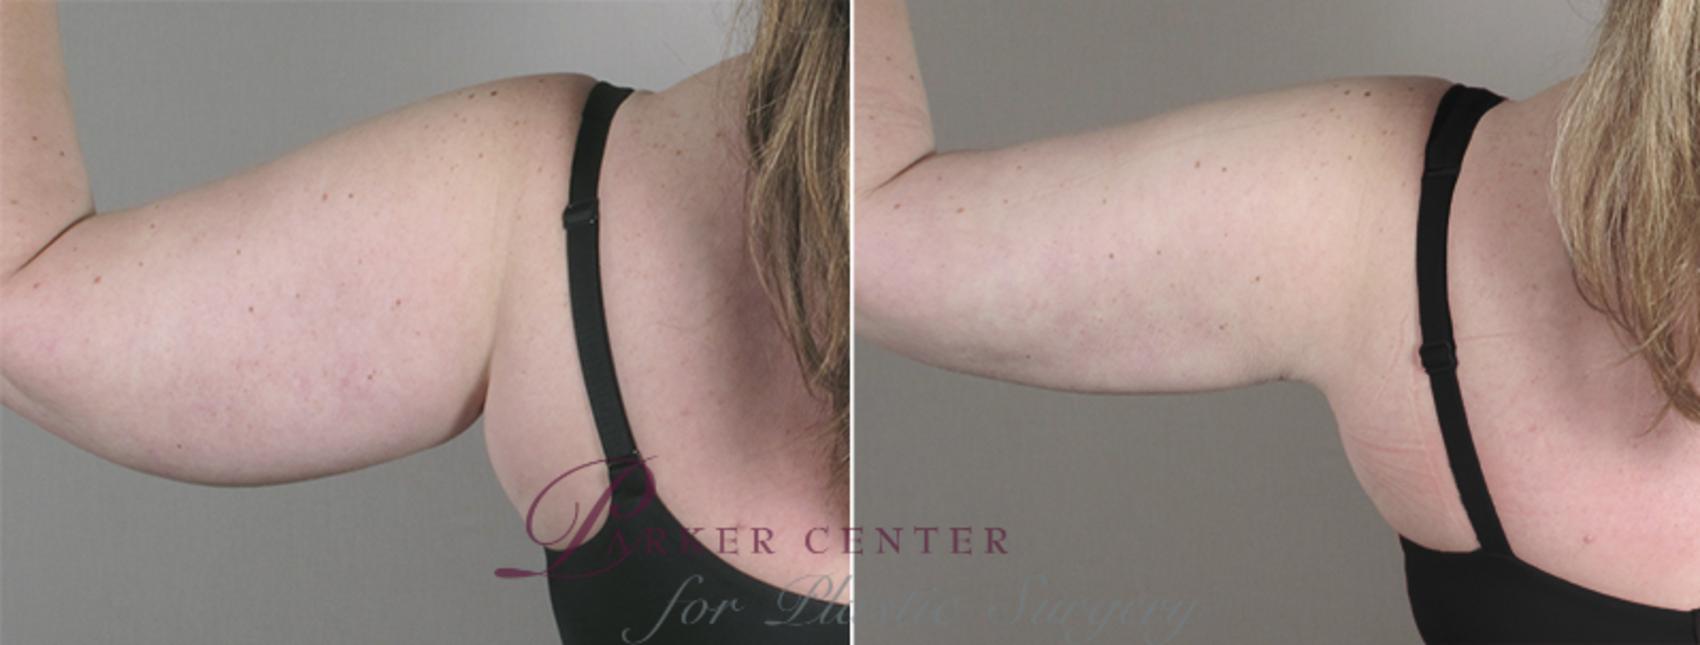 Upper Arm Rejuvenation Case 827 Before & After View #3 | Paramus, NJ | Parker Center for Plastic Surgery